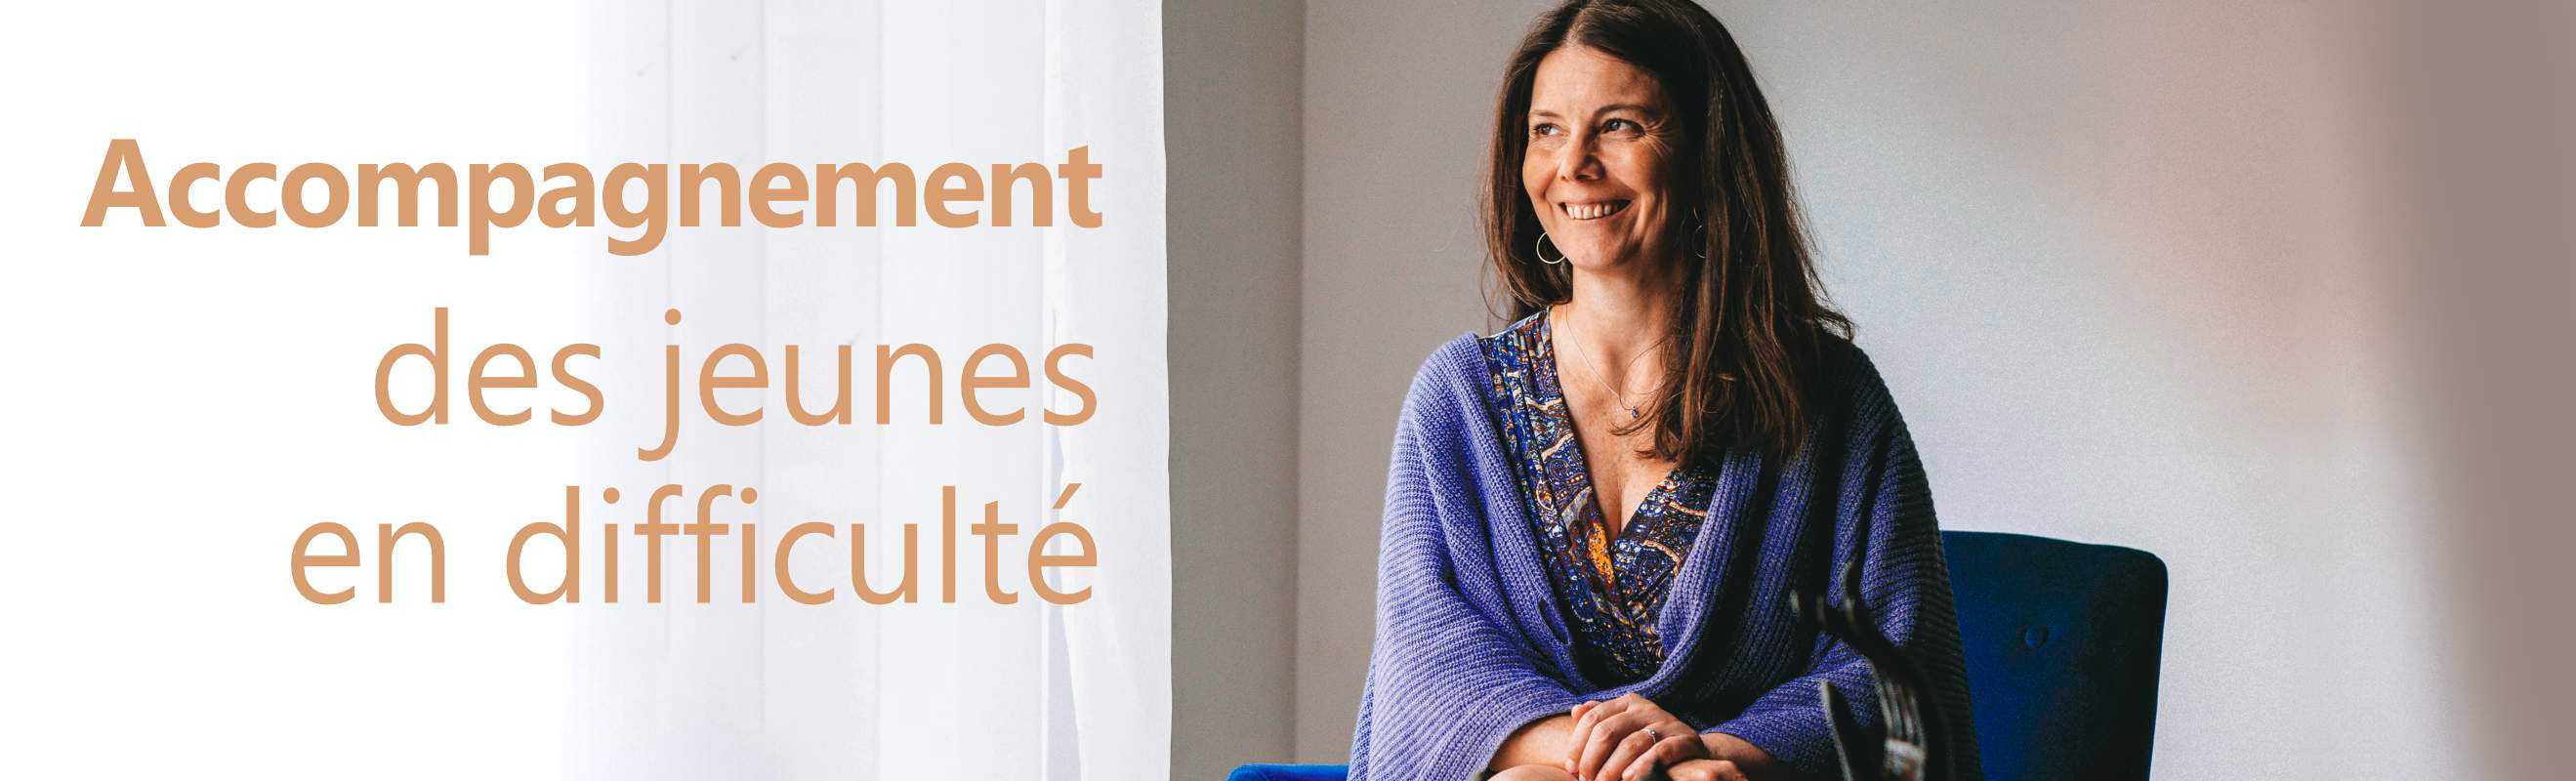 Céline Reynaud enseigne le Yoga à Lille (59000). C'est une professeur diplômée qui en parallèle est professeur de français pour l'éducation nationale.